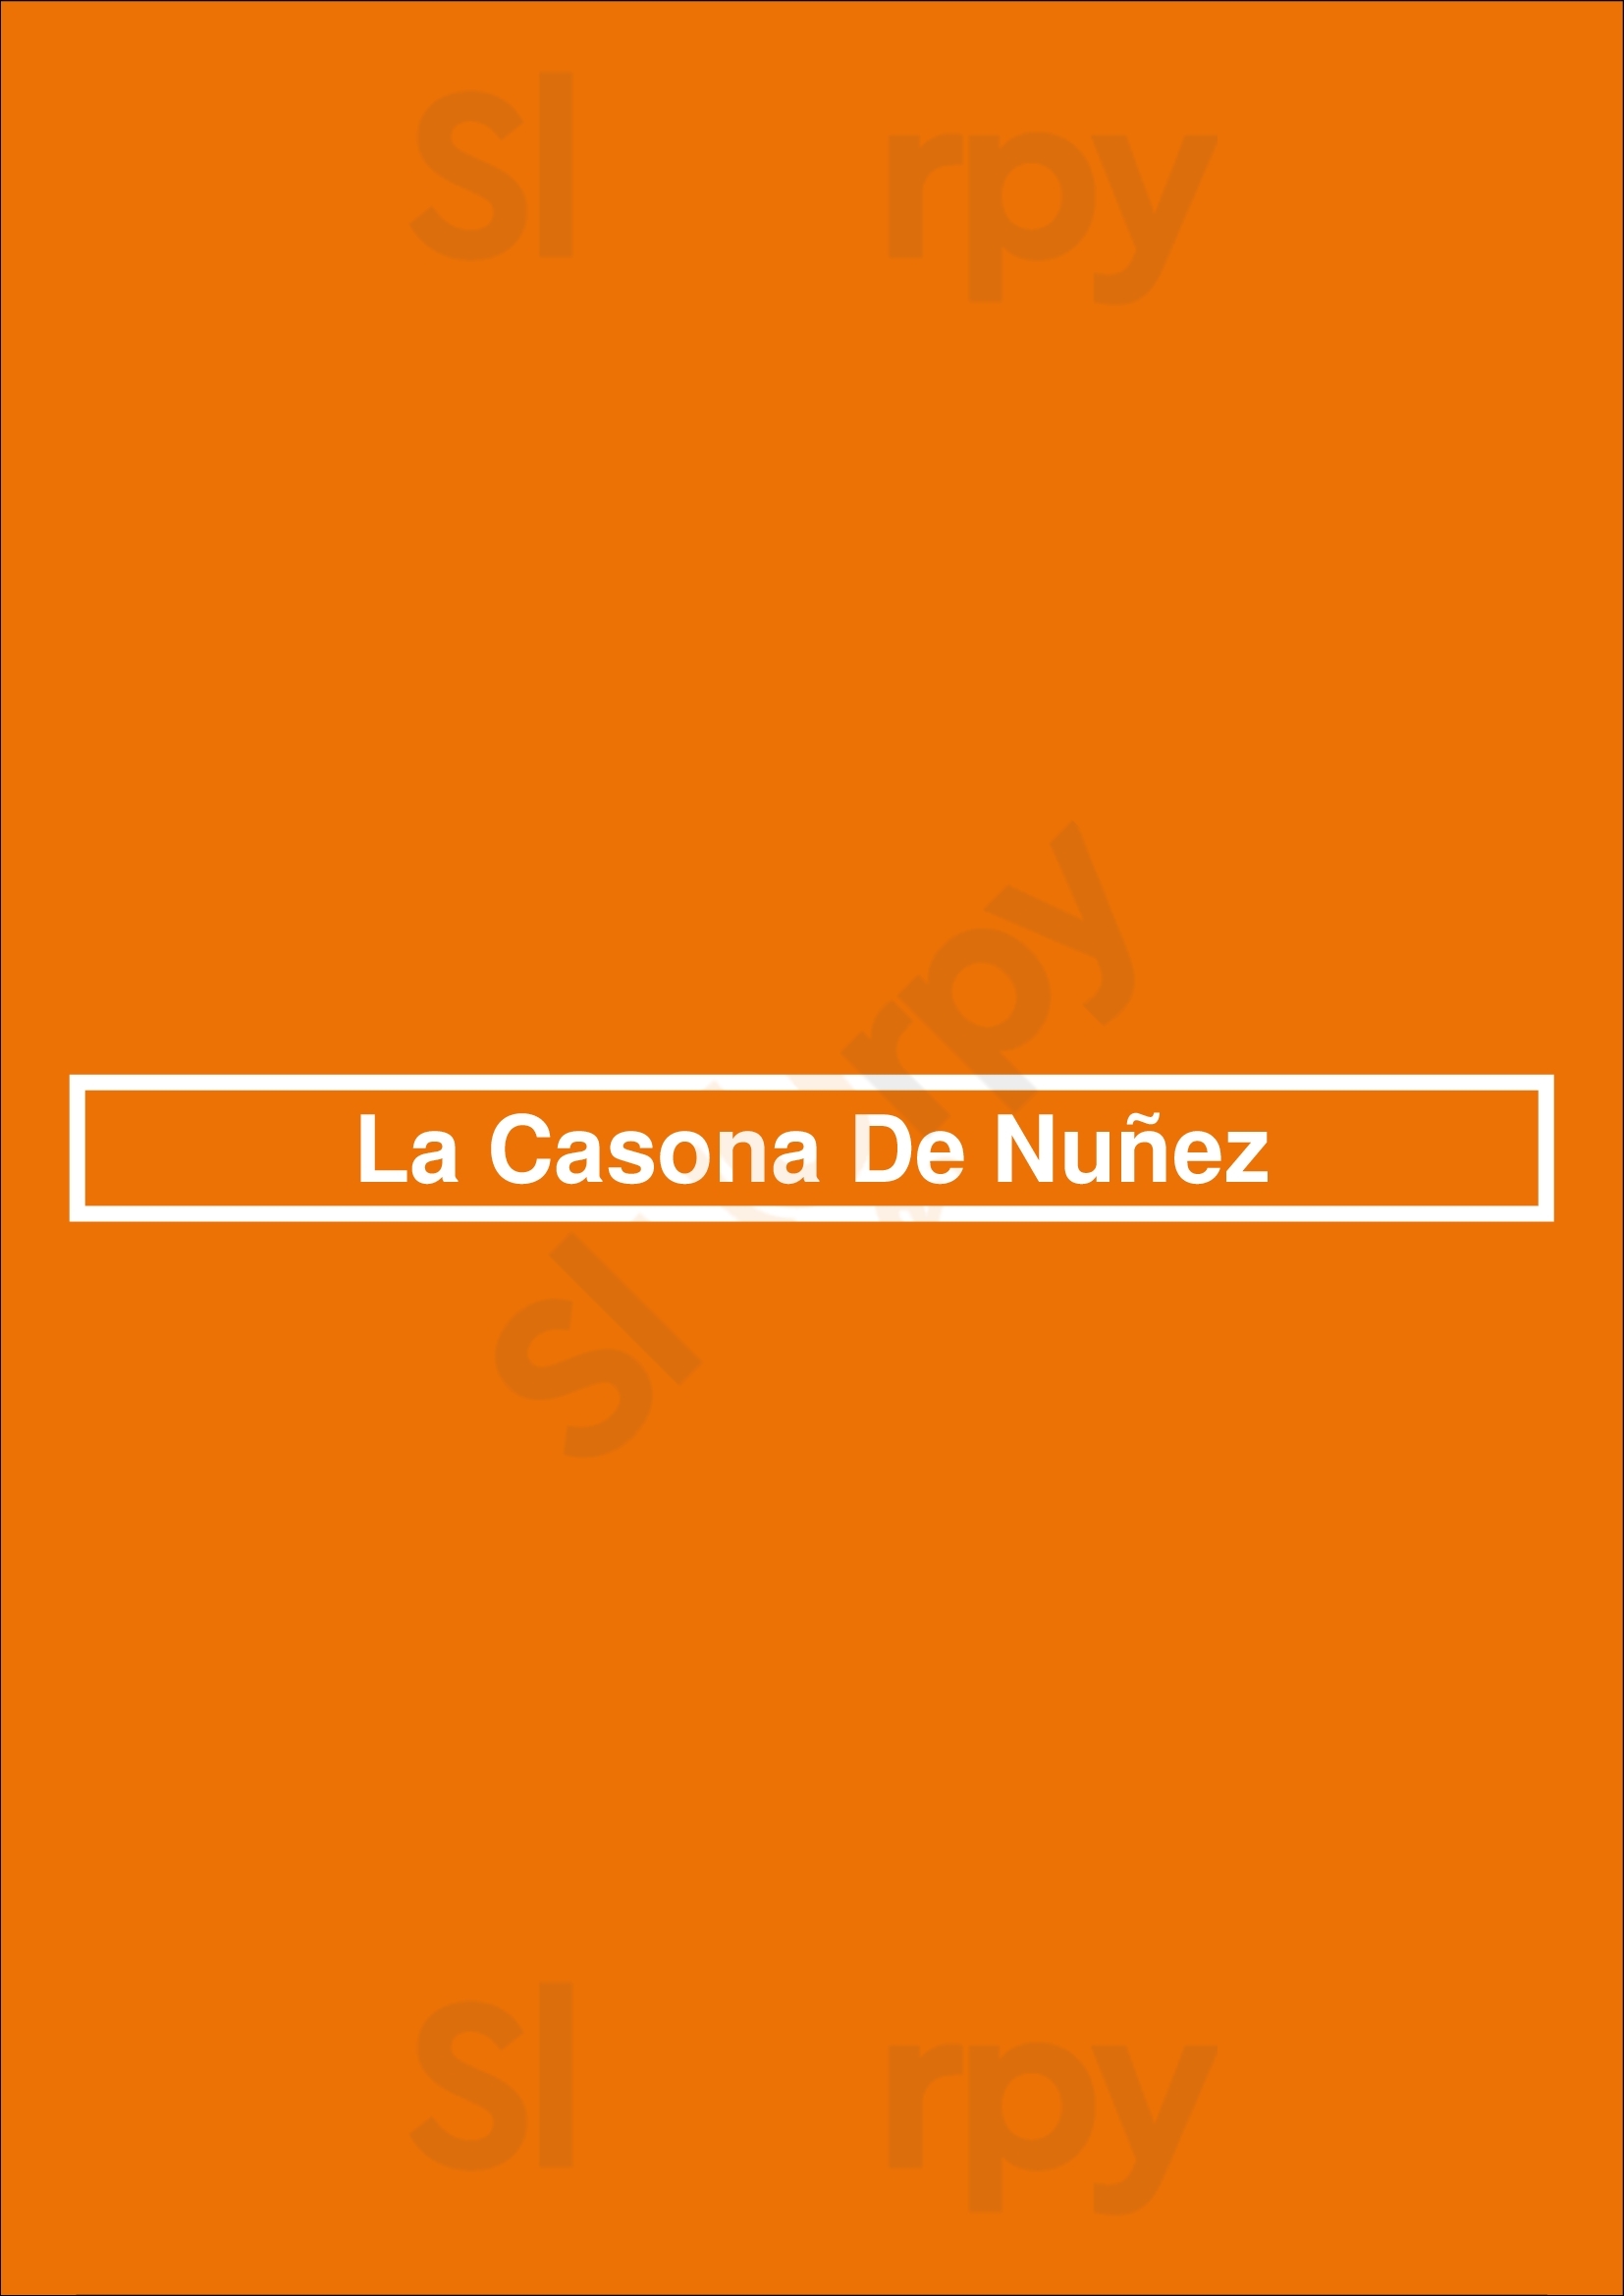 La Casona De Nuñez Buenos Aires Menu - 1